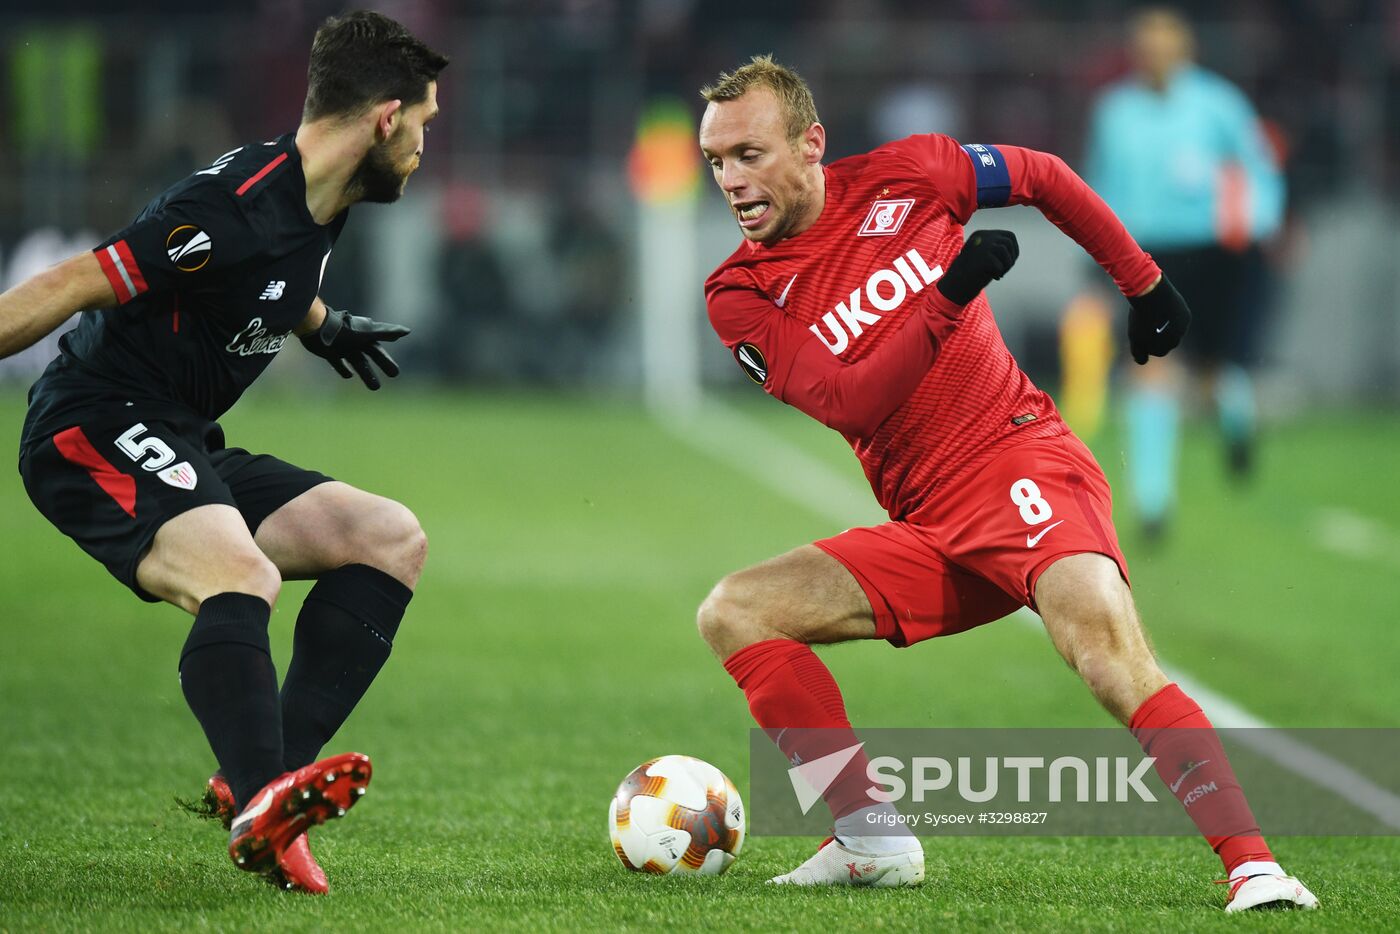 UEFA Europa League. Spartak vs. Athletic